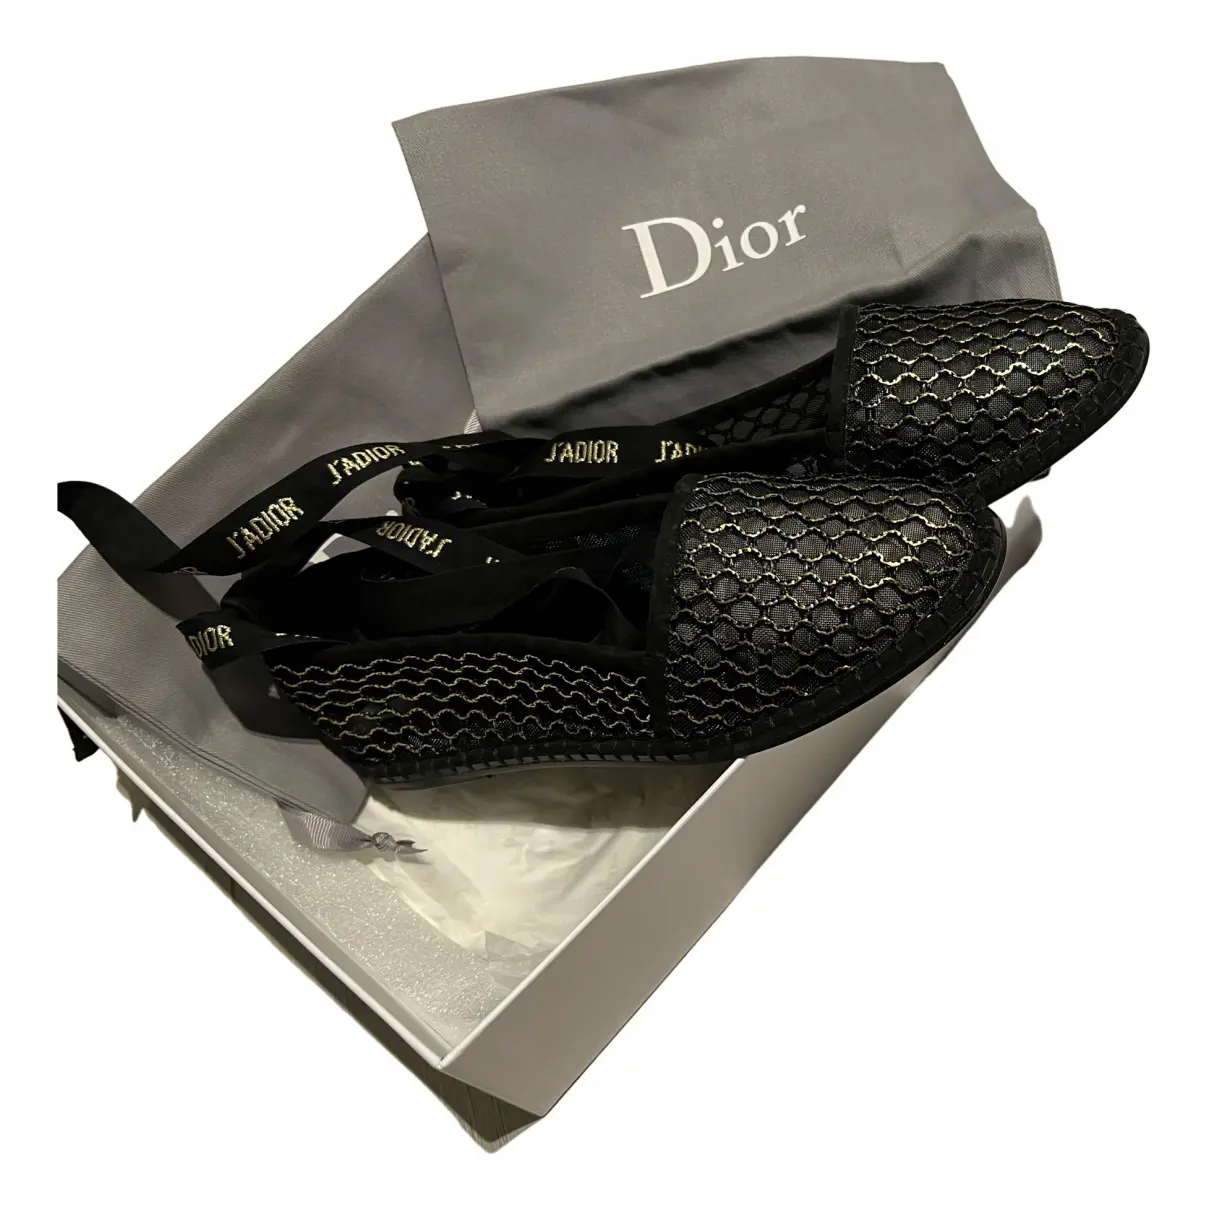 Buy Dior J'adior cloth ballet flats online